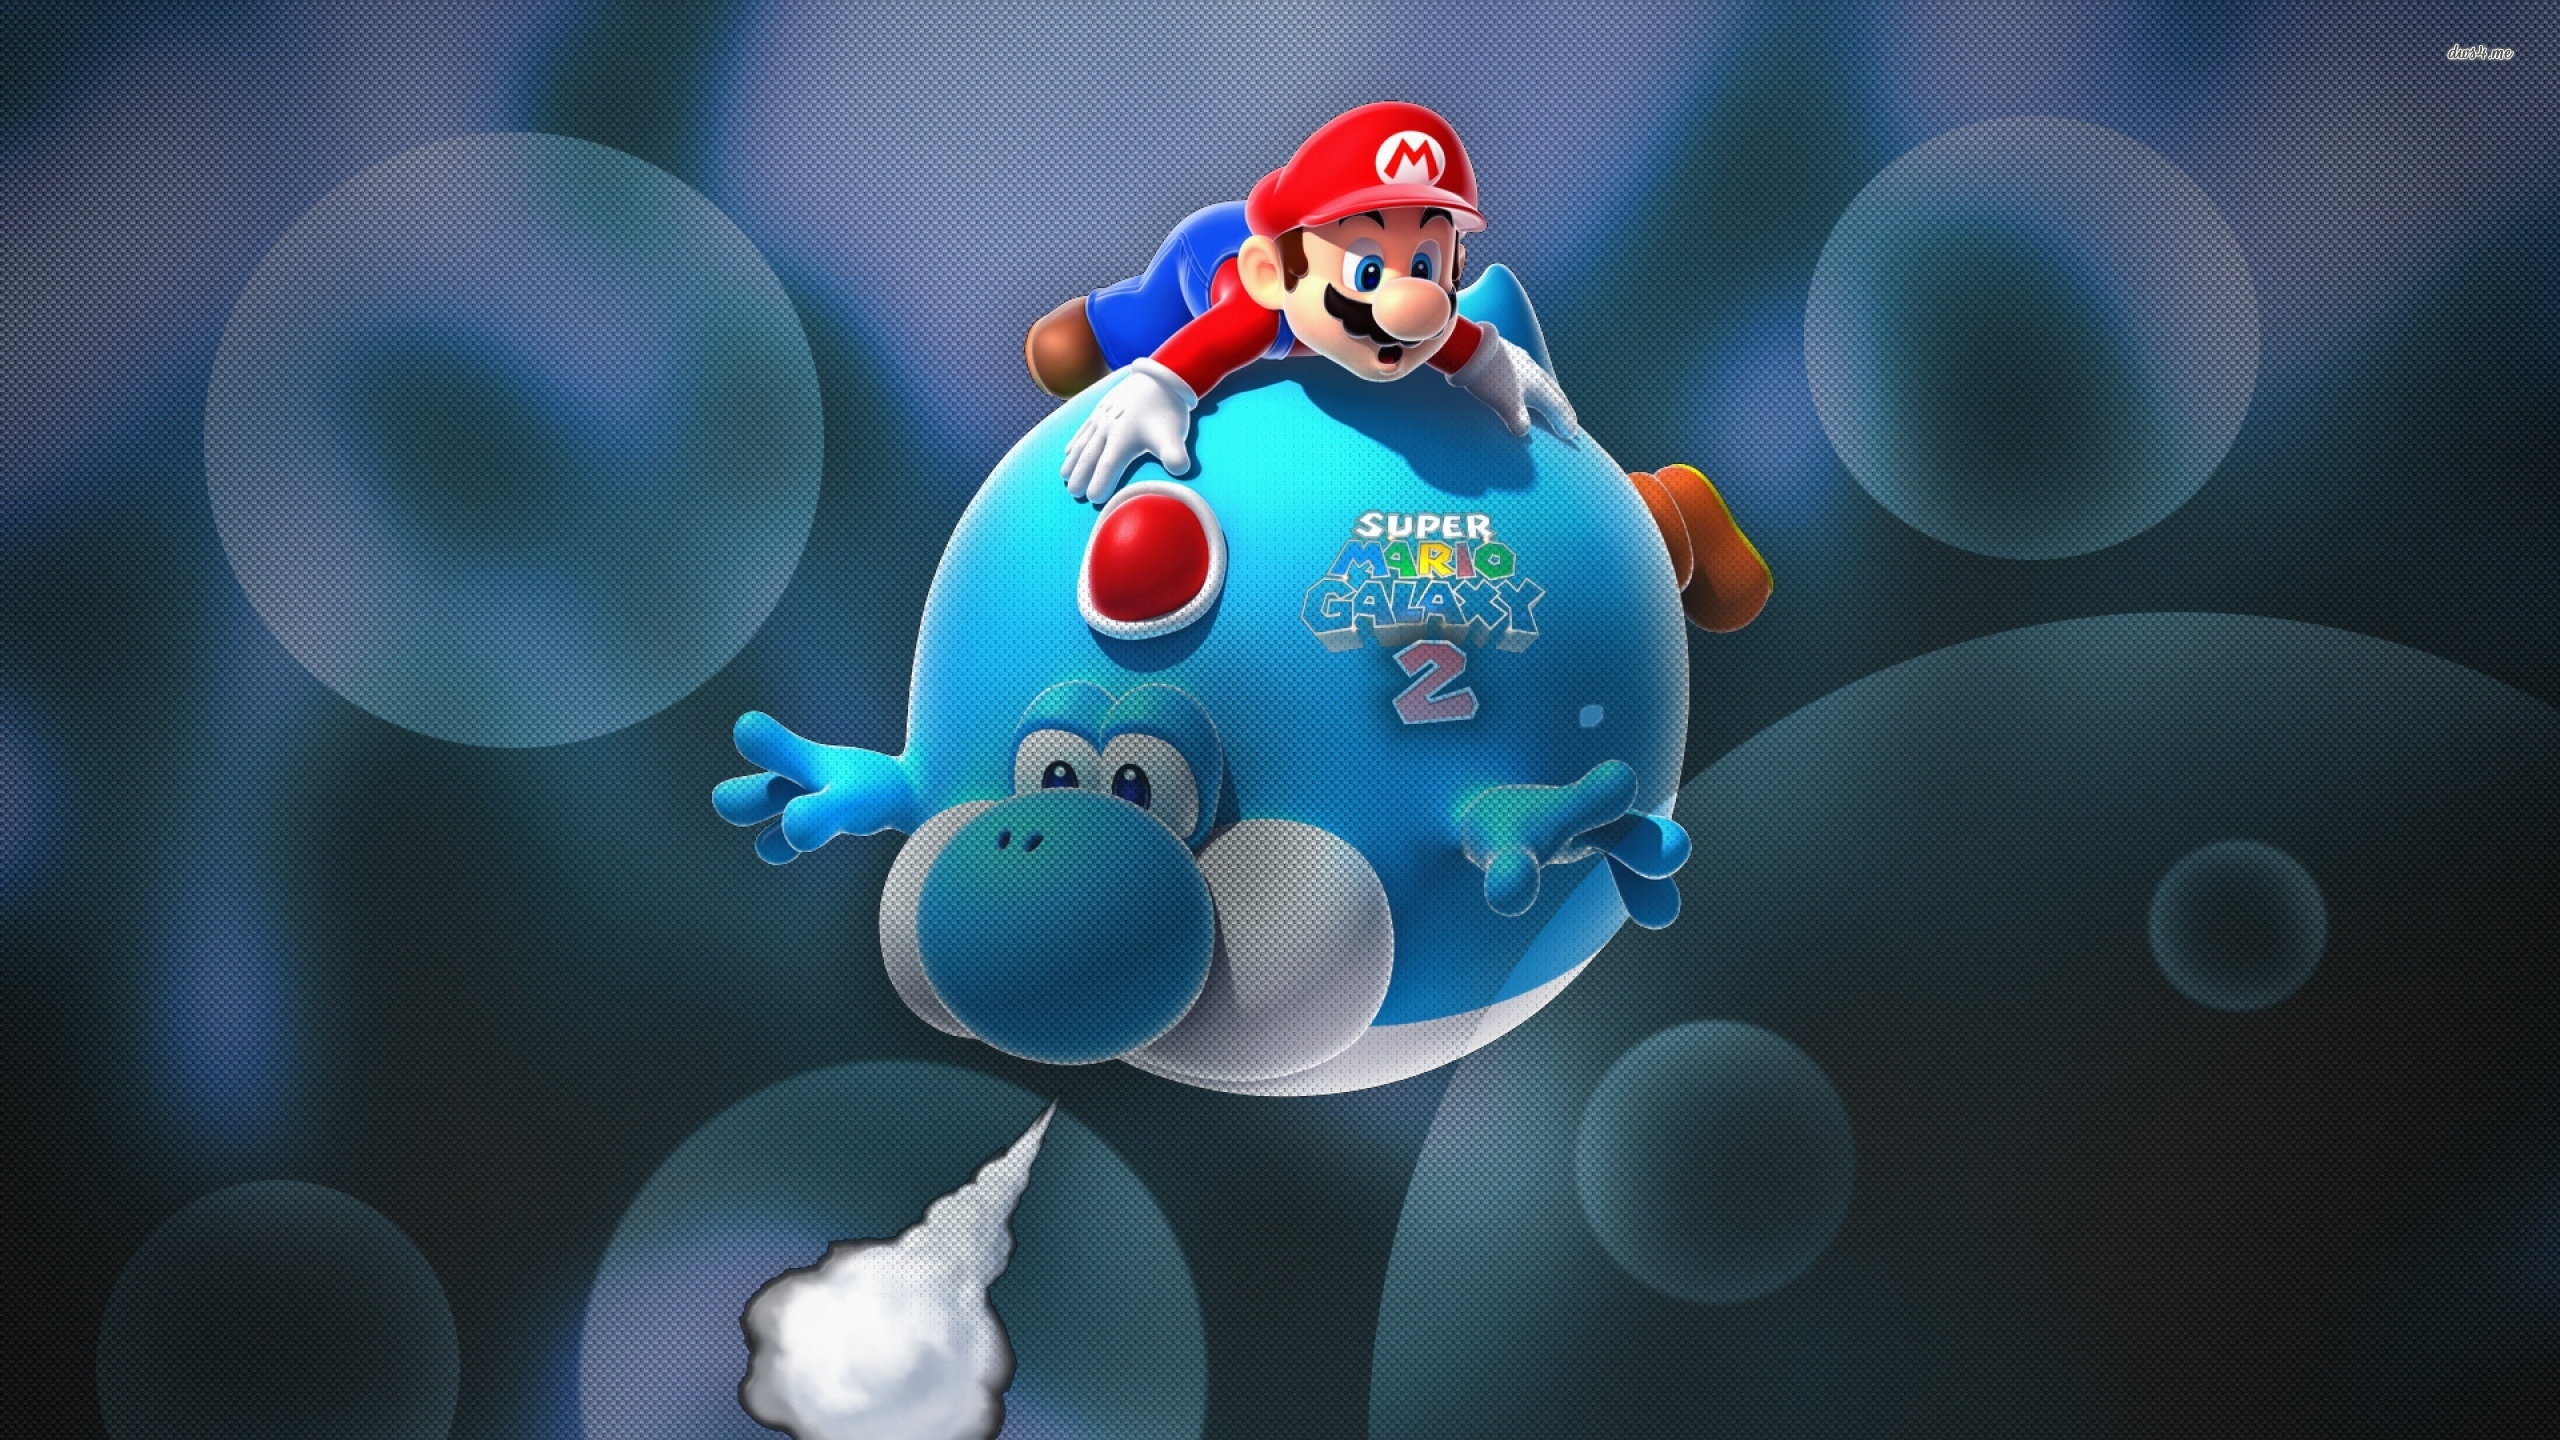 Wallpaper Kartun - Super Mario Galaxy 2 Yoshi Power Ups , HD Wallpaper & Backgrounds